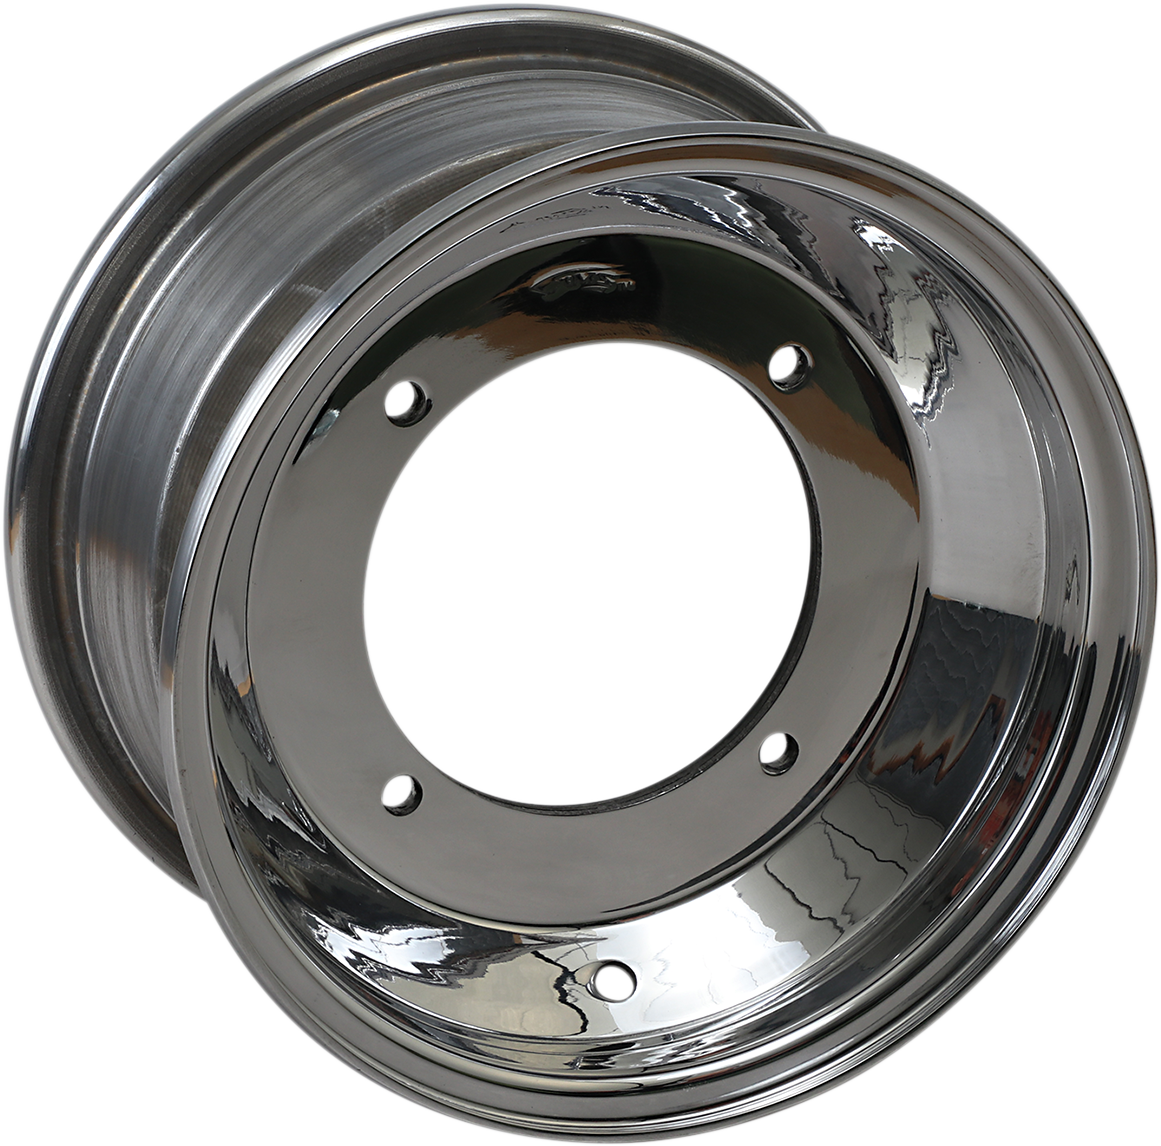 AMS Standard-Lip Spun Wheel - Front - 10x5 - 4/144 - 3+2 261-105144P3